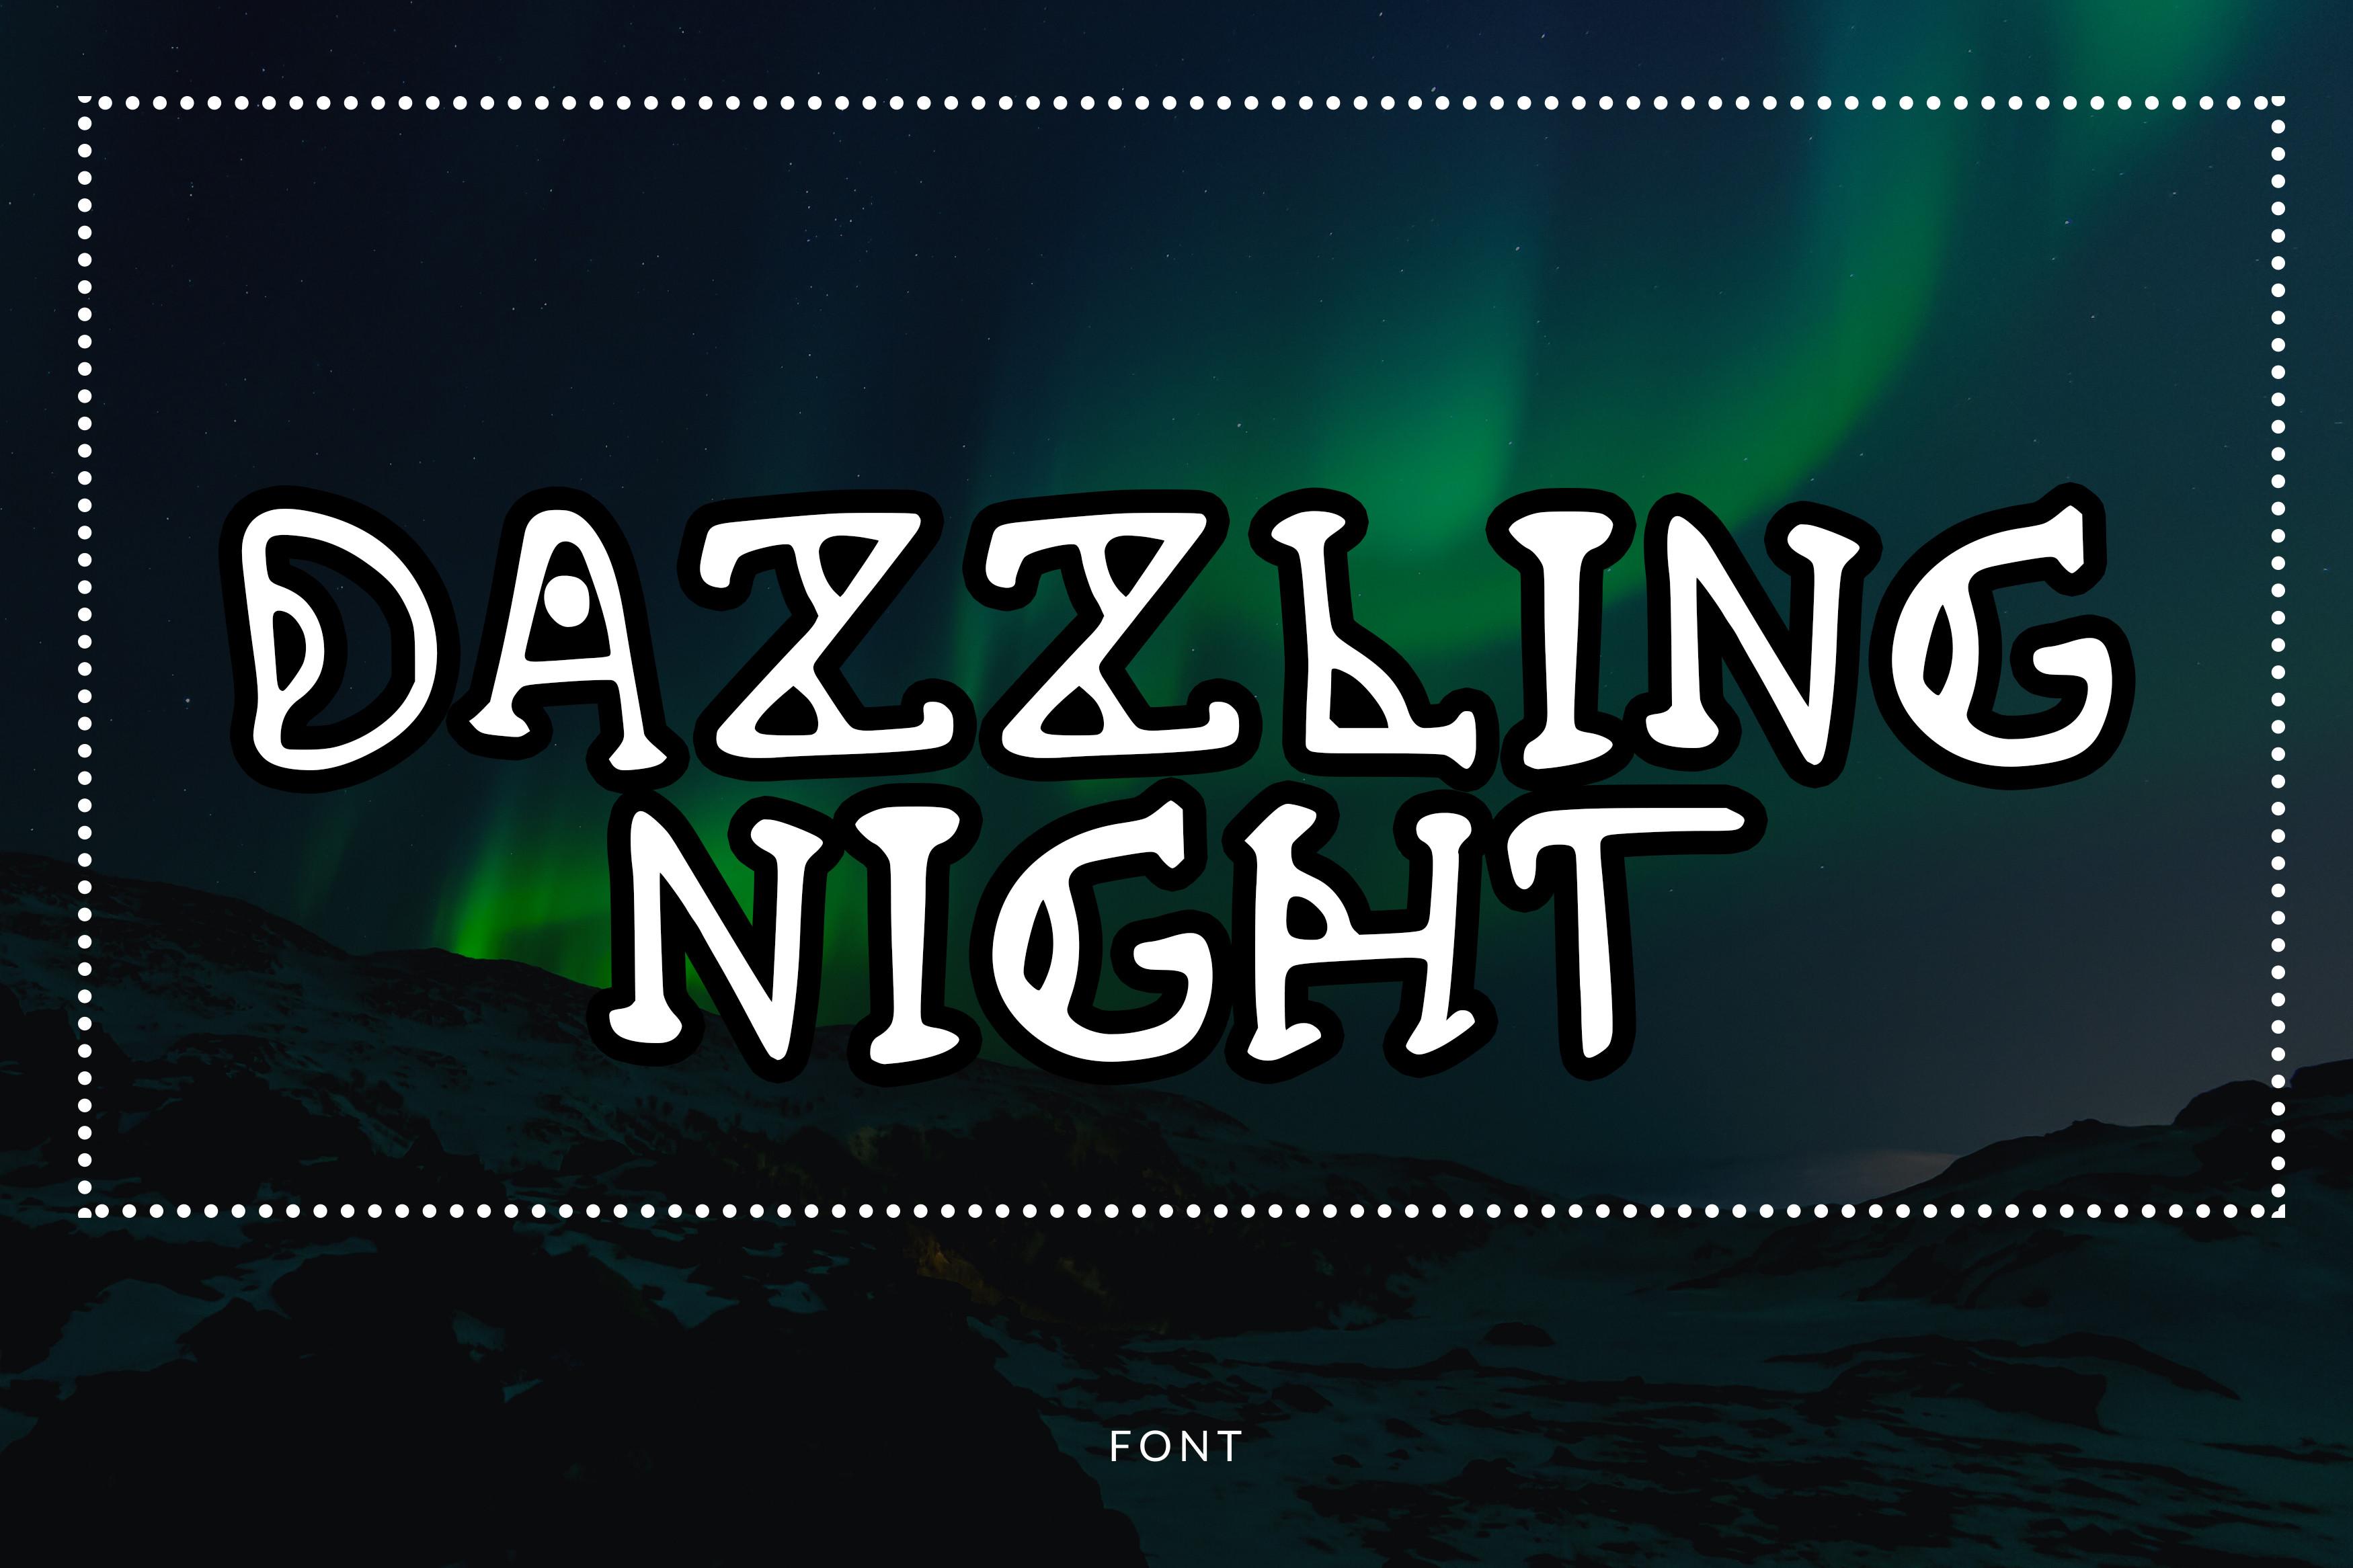 Dazzling Night Font